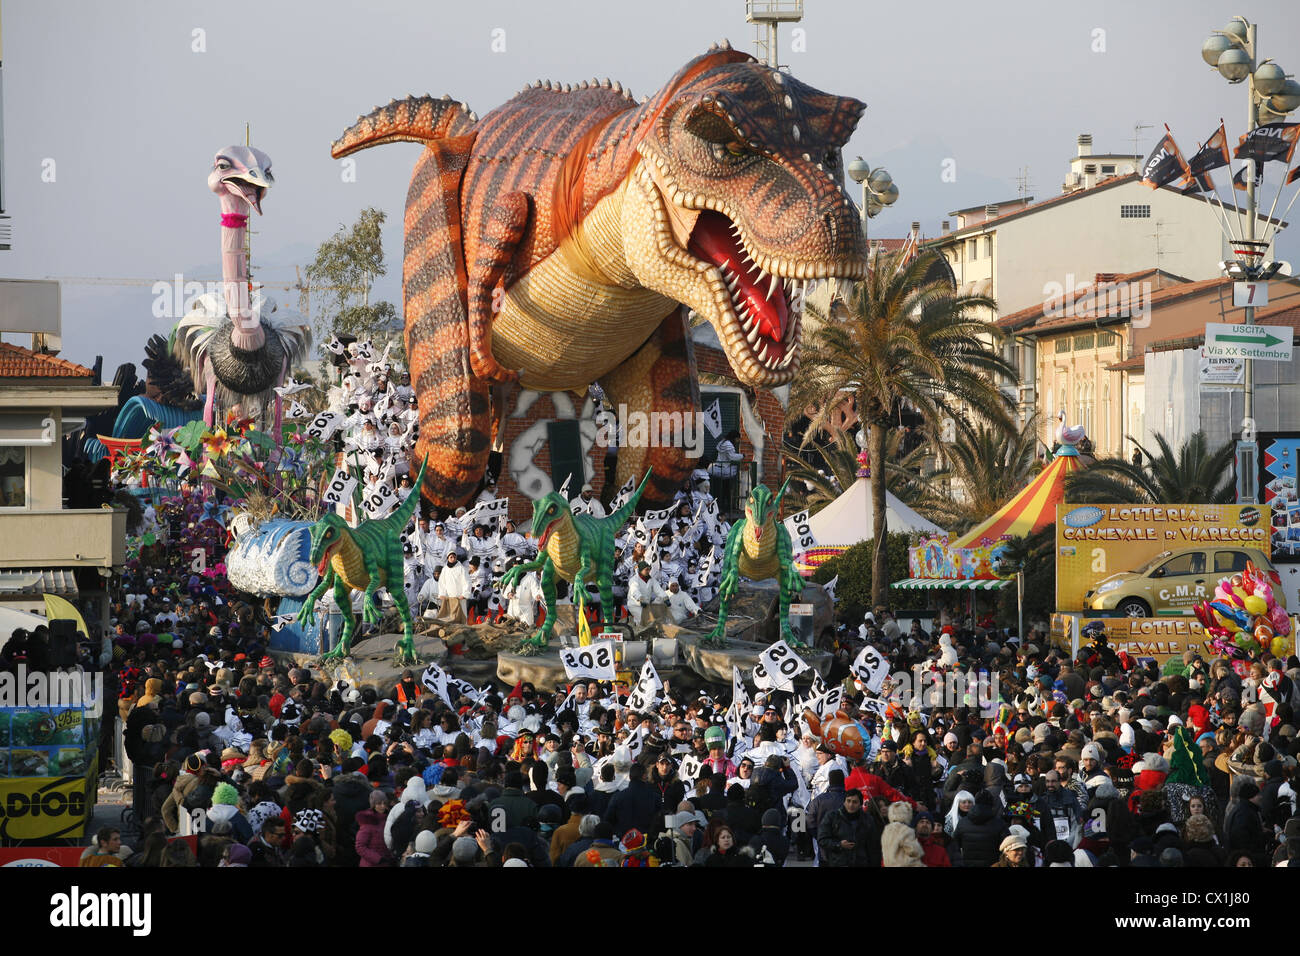 Karneval zeichnet sich durch Papier Papiermache hin-und Herbewegungen, Karikaturen von Politikern und fiktiven Kreationen darstellt. Stockfoto